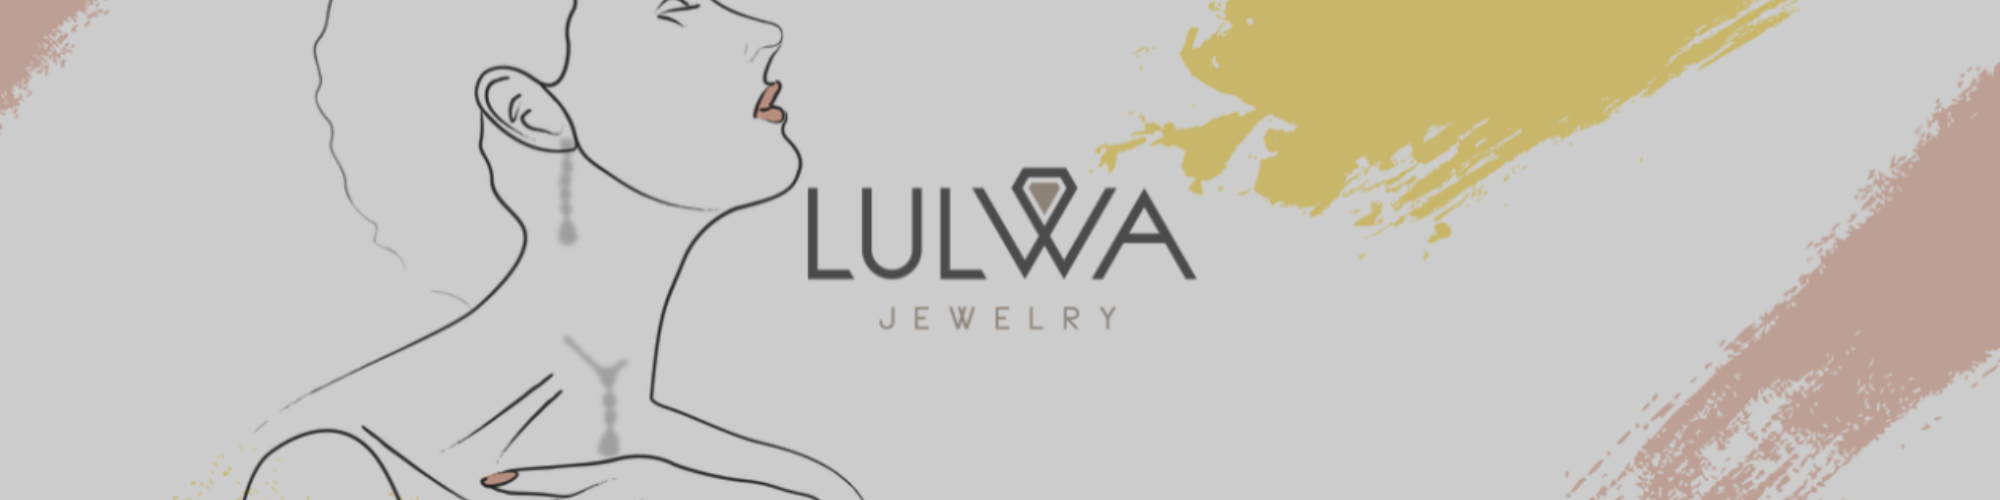 Lulwa Jewelry